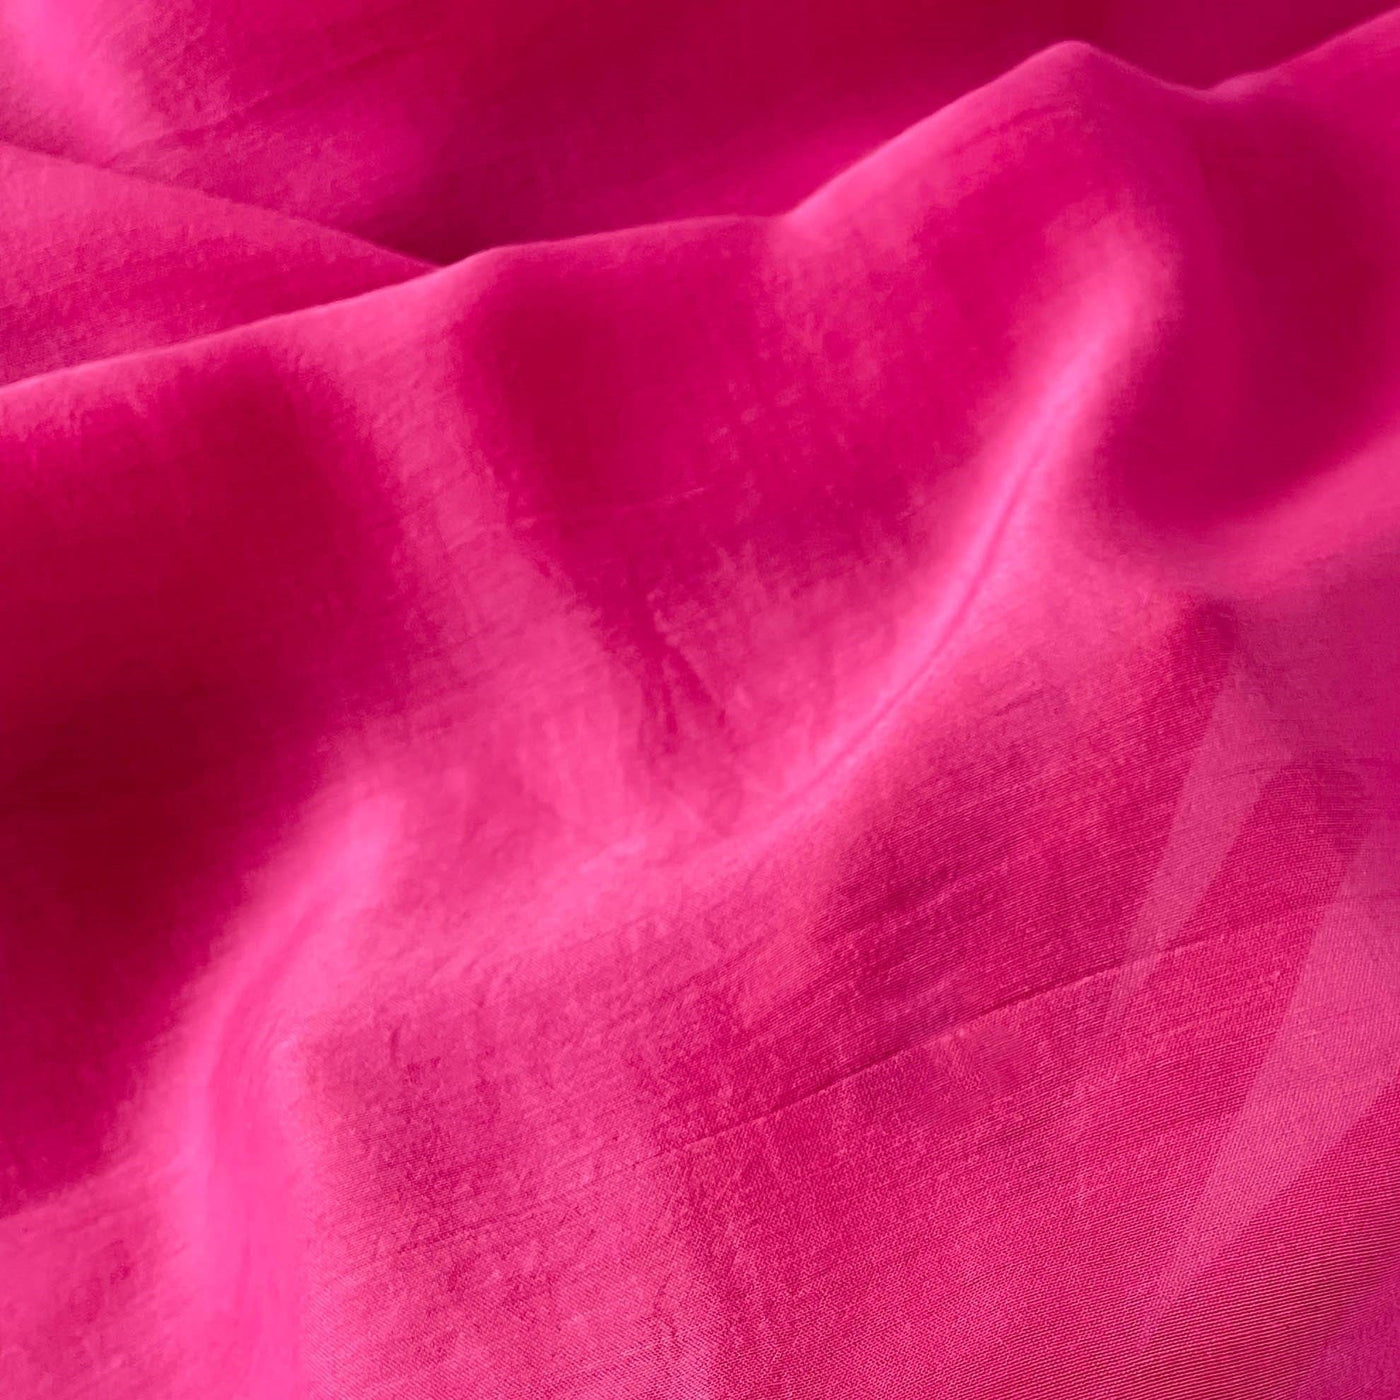 Munga Saree Cut Piece (CUT PIECE) Pink Colour Hand Dyed Soft Munga Fabric (Width 44 Inches)